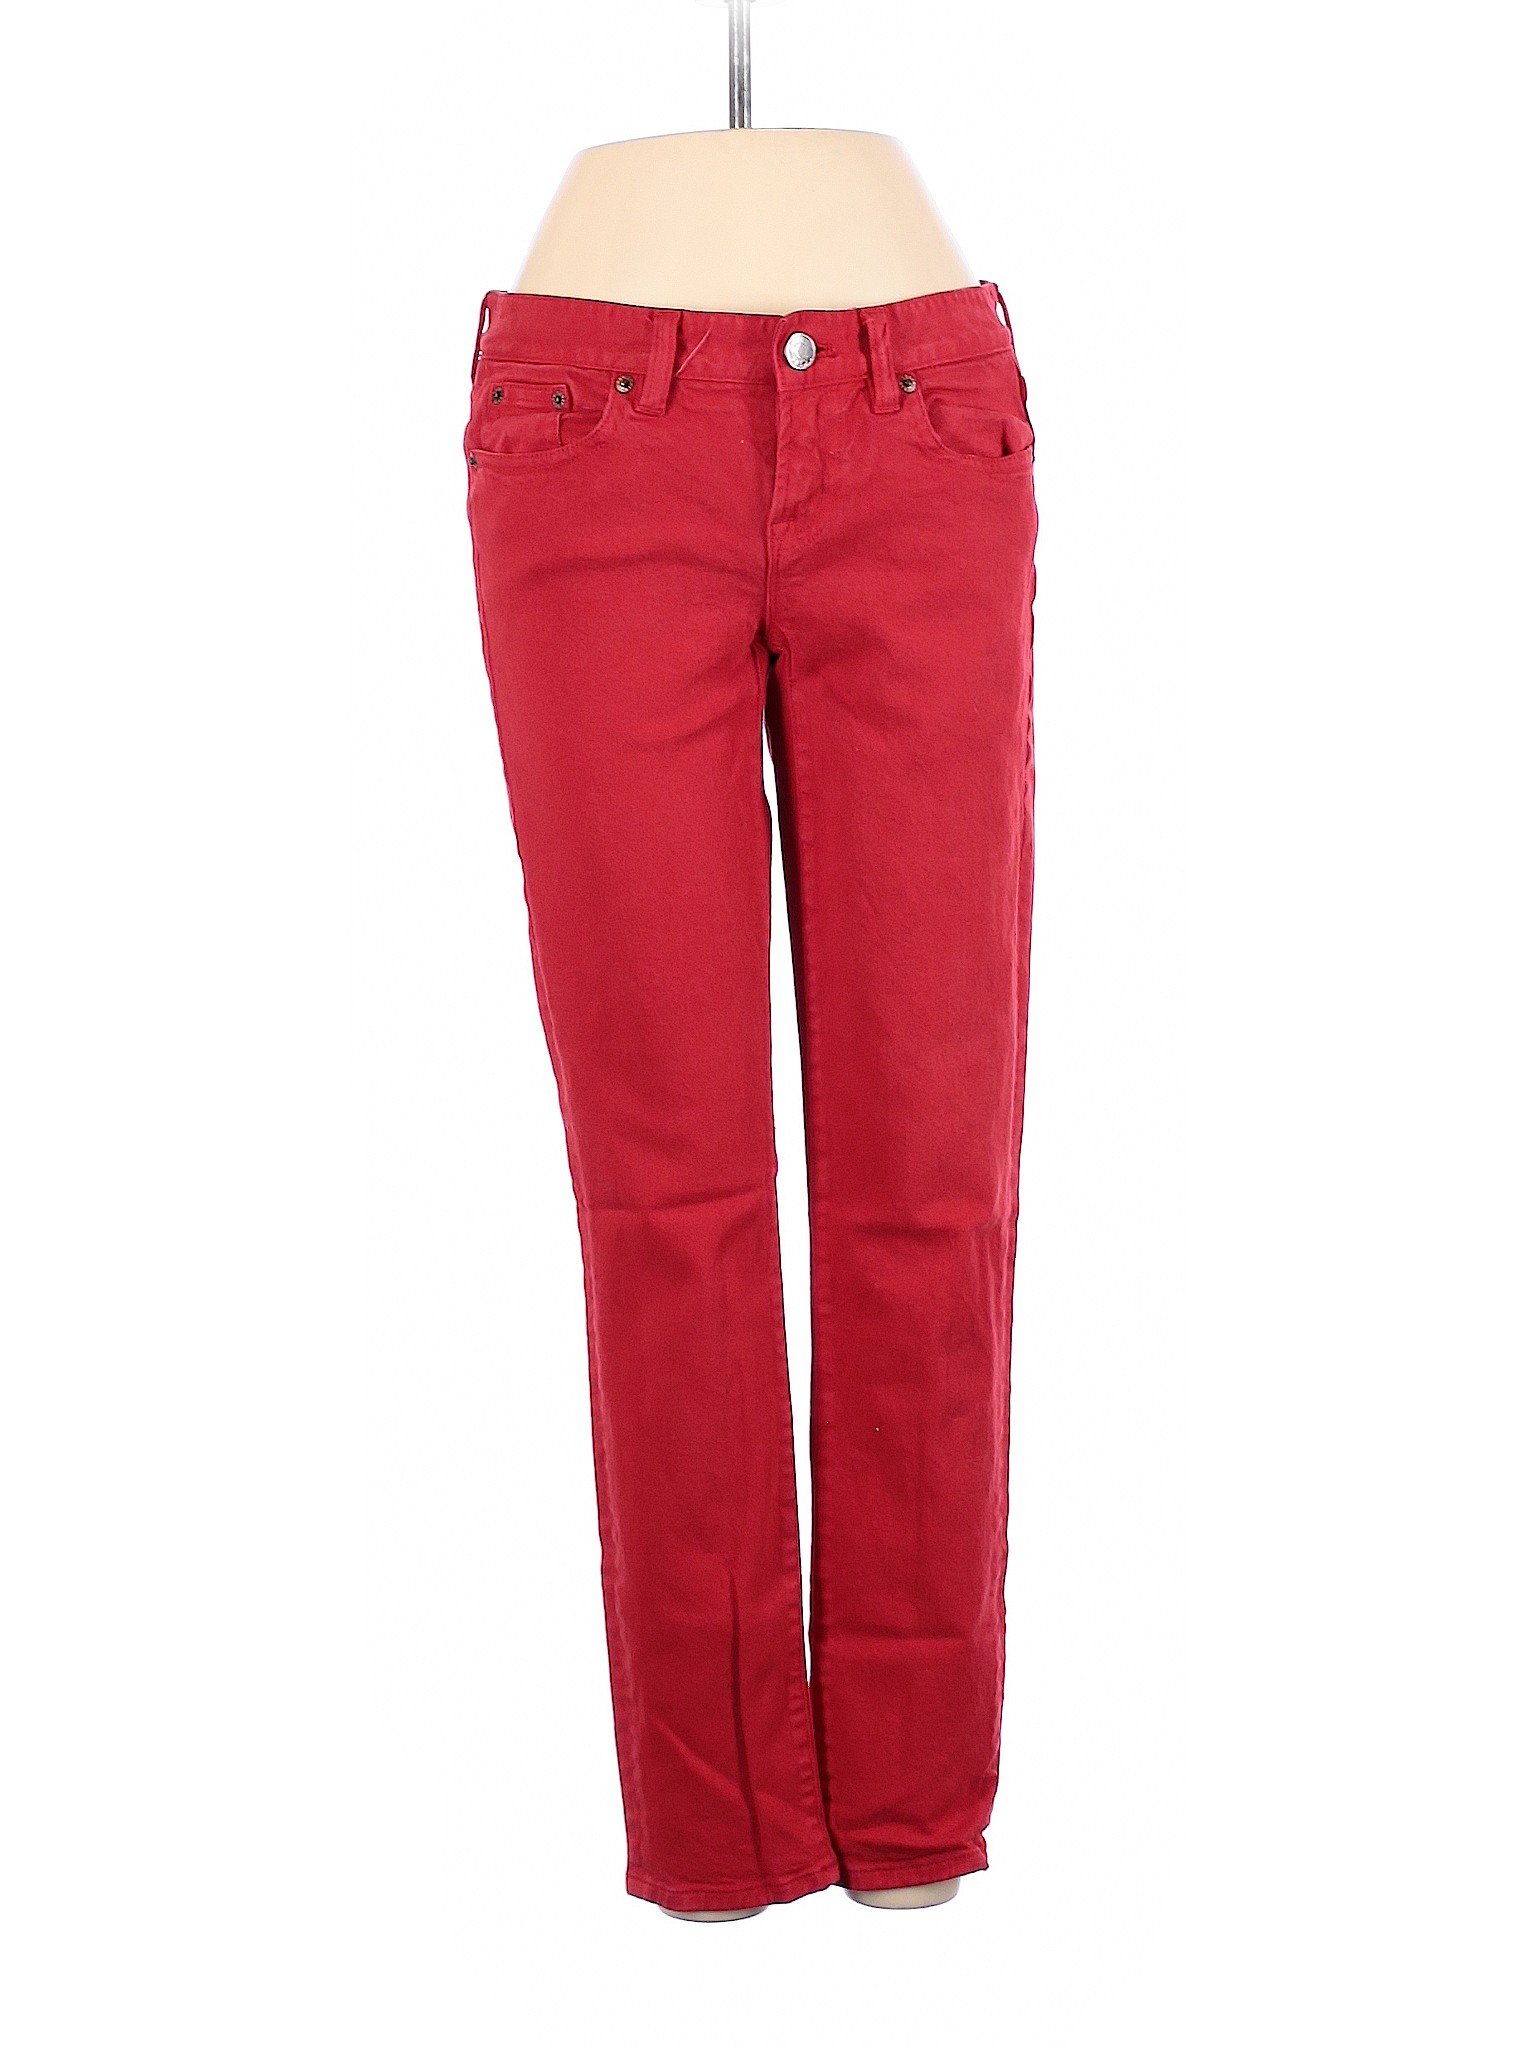 J.Crew Women Red Jeans 25W | eBay